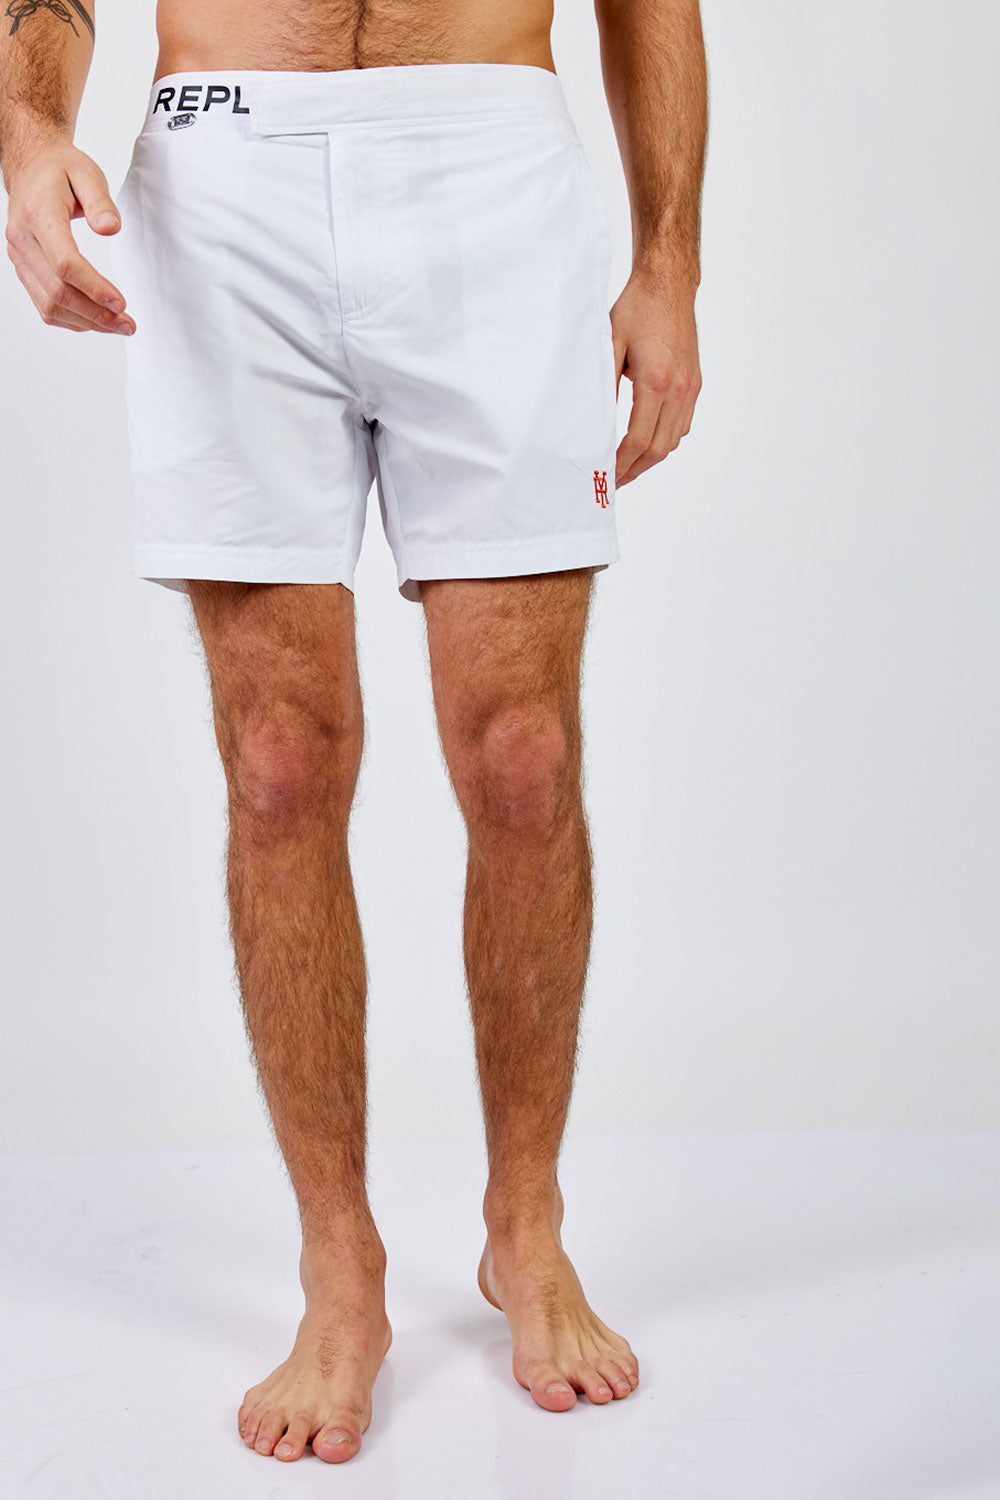 Replay מכנס בגד ים בצבע לבן לגברים-Replay-S-נאקו